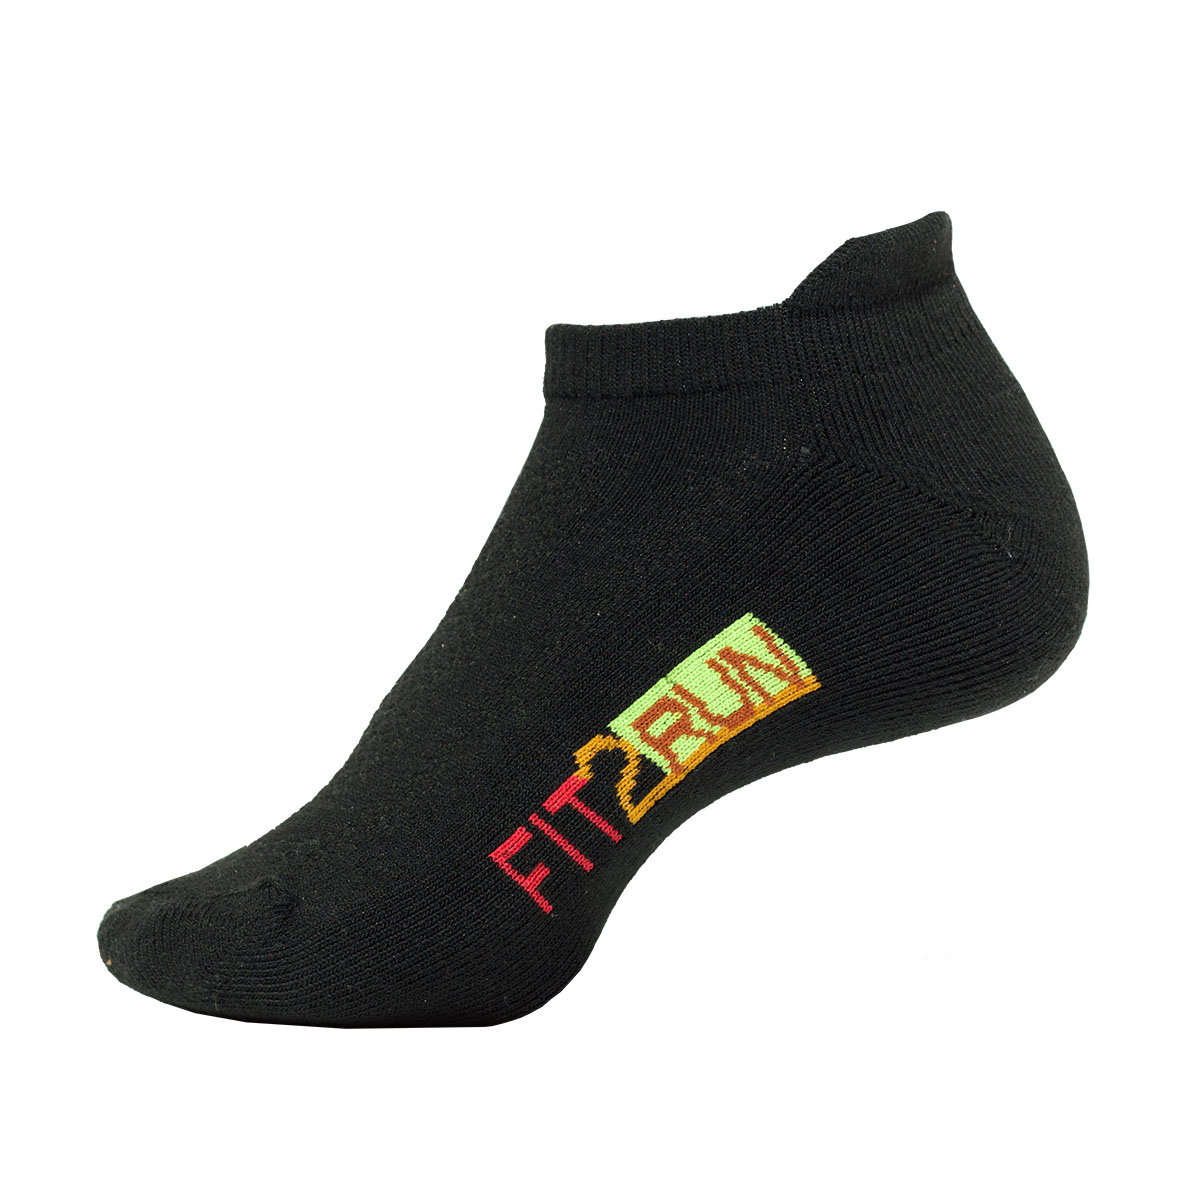 Fit2Run Mesh Top 3pk Socks, , large image number null